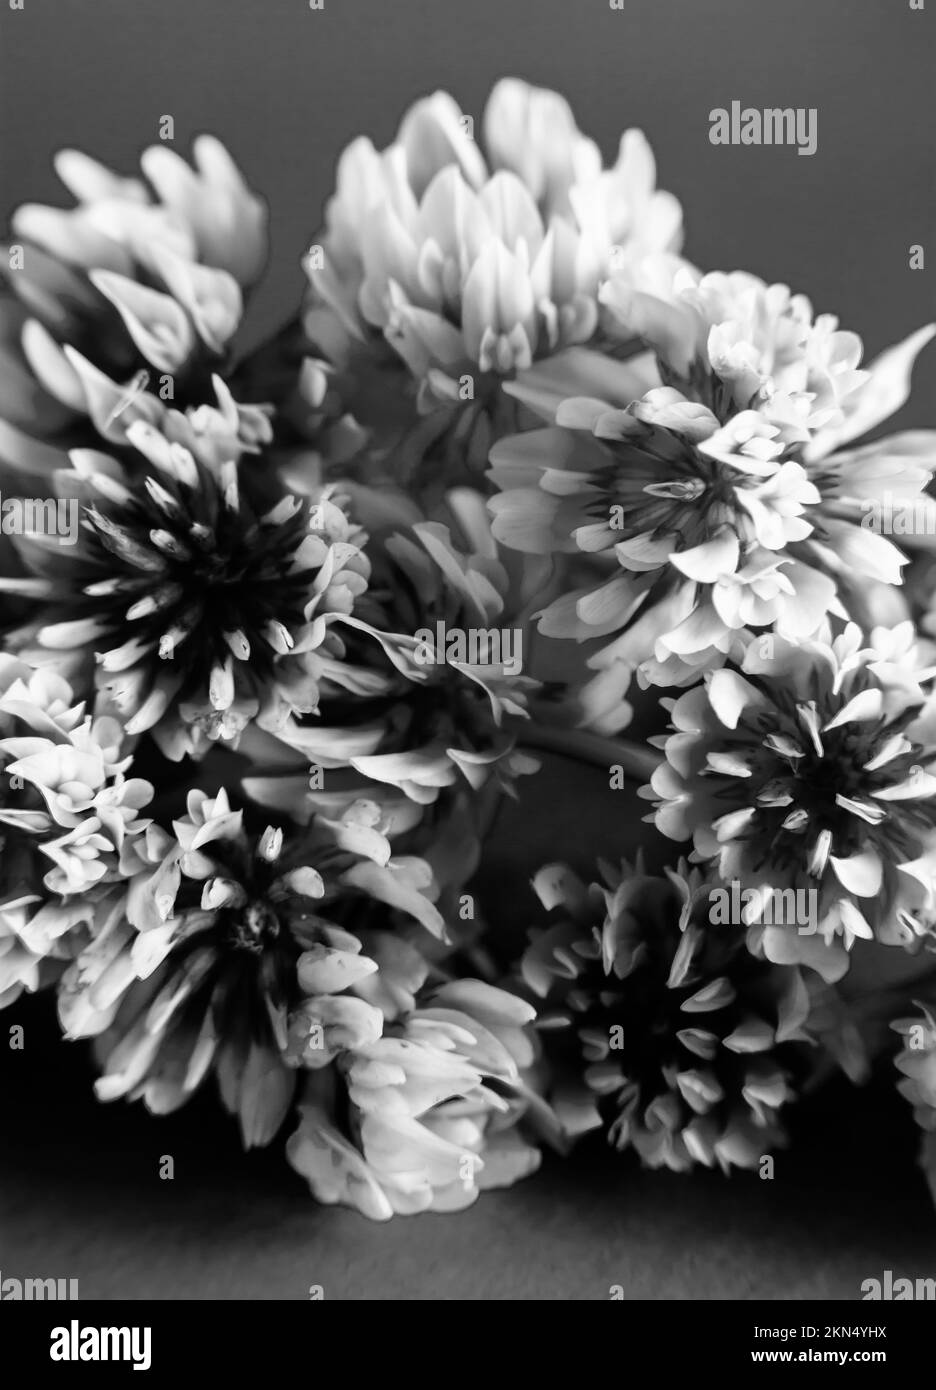 Classica foto in bianco e nero su lampadine di fiori di trifoglio in particolari di tranquillità naturale Foto Stock